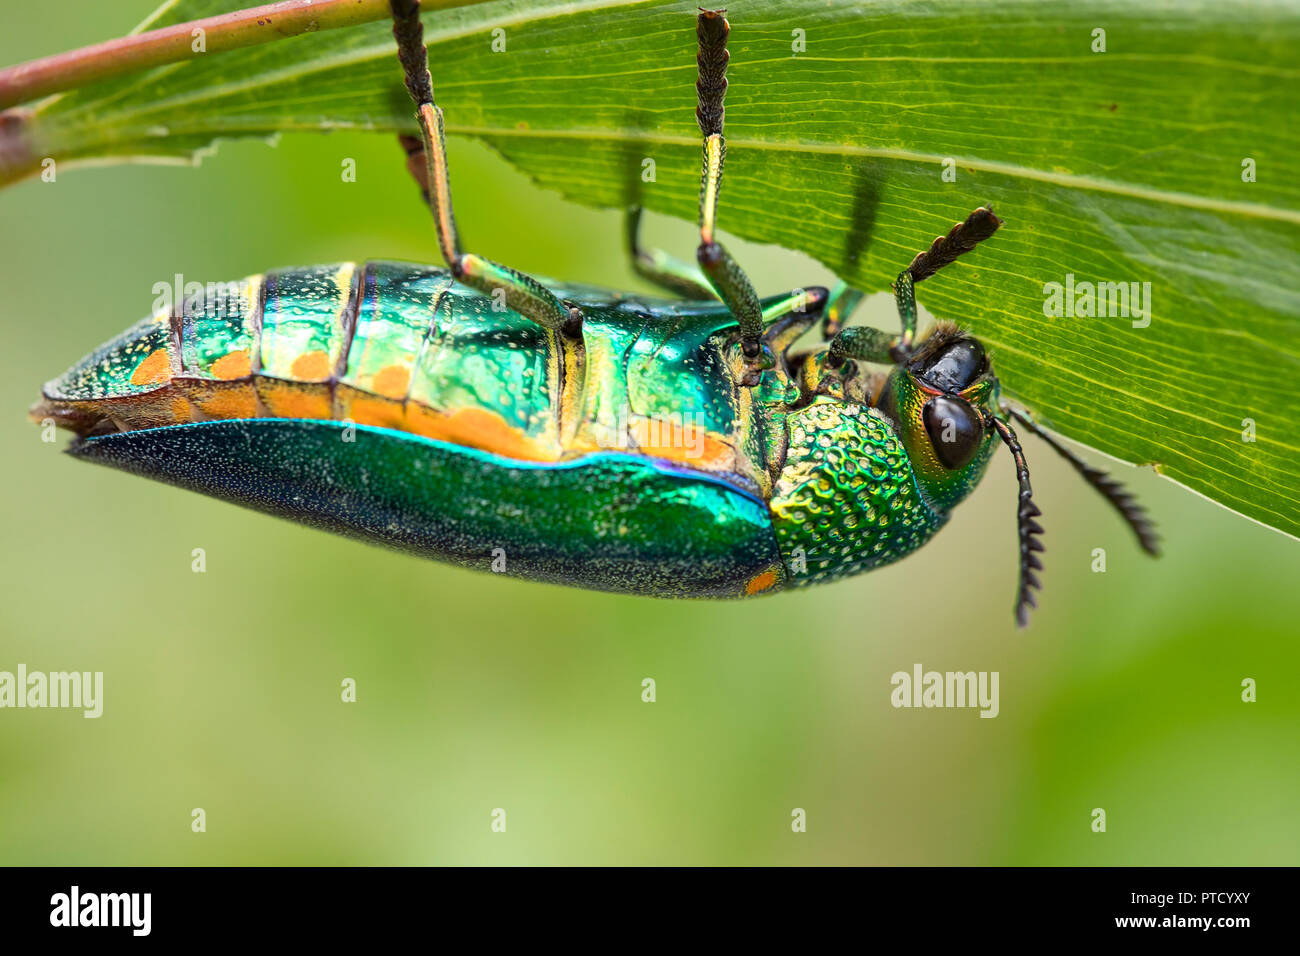 Jewel beetle (Buprestidae) se nourrit d'un congé, Isaan, Thaïlande Banque D'Images